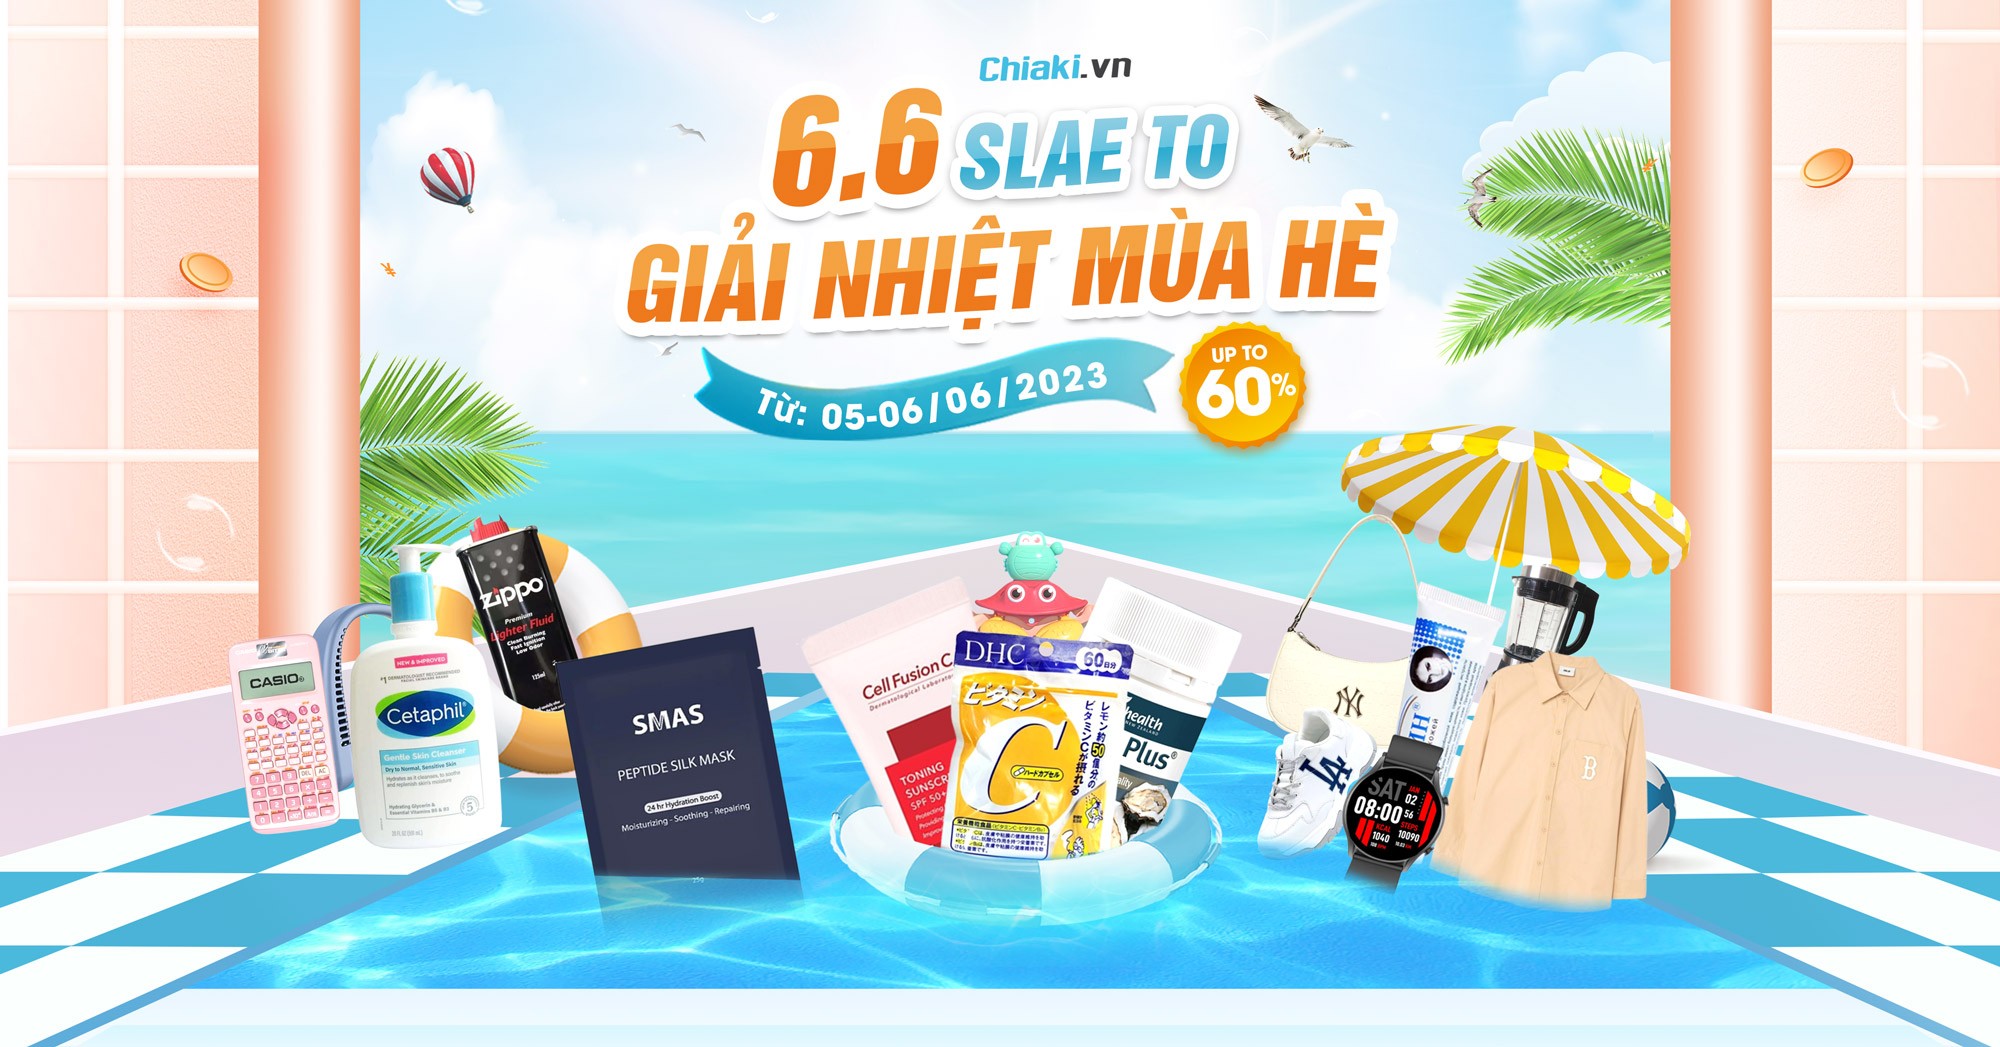 Chiaki Sale To chào hè 06/06 giảm đến 60% toàn bộ sản phẩm